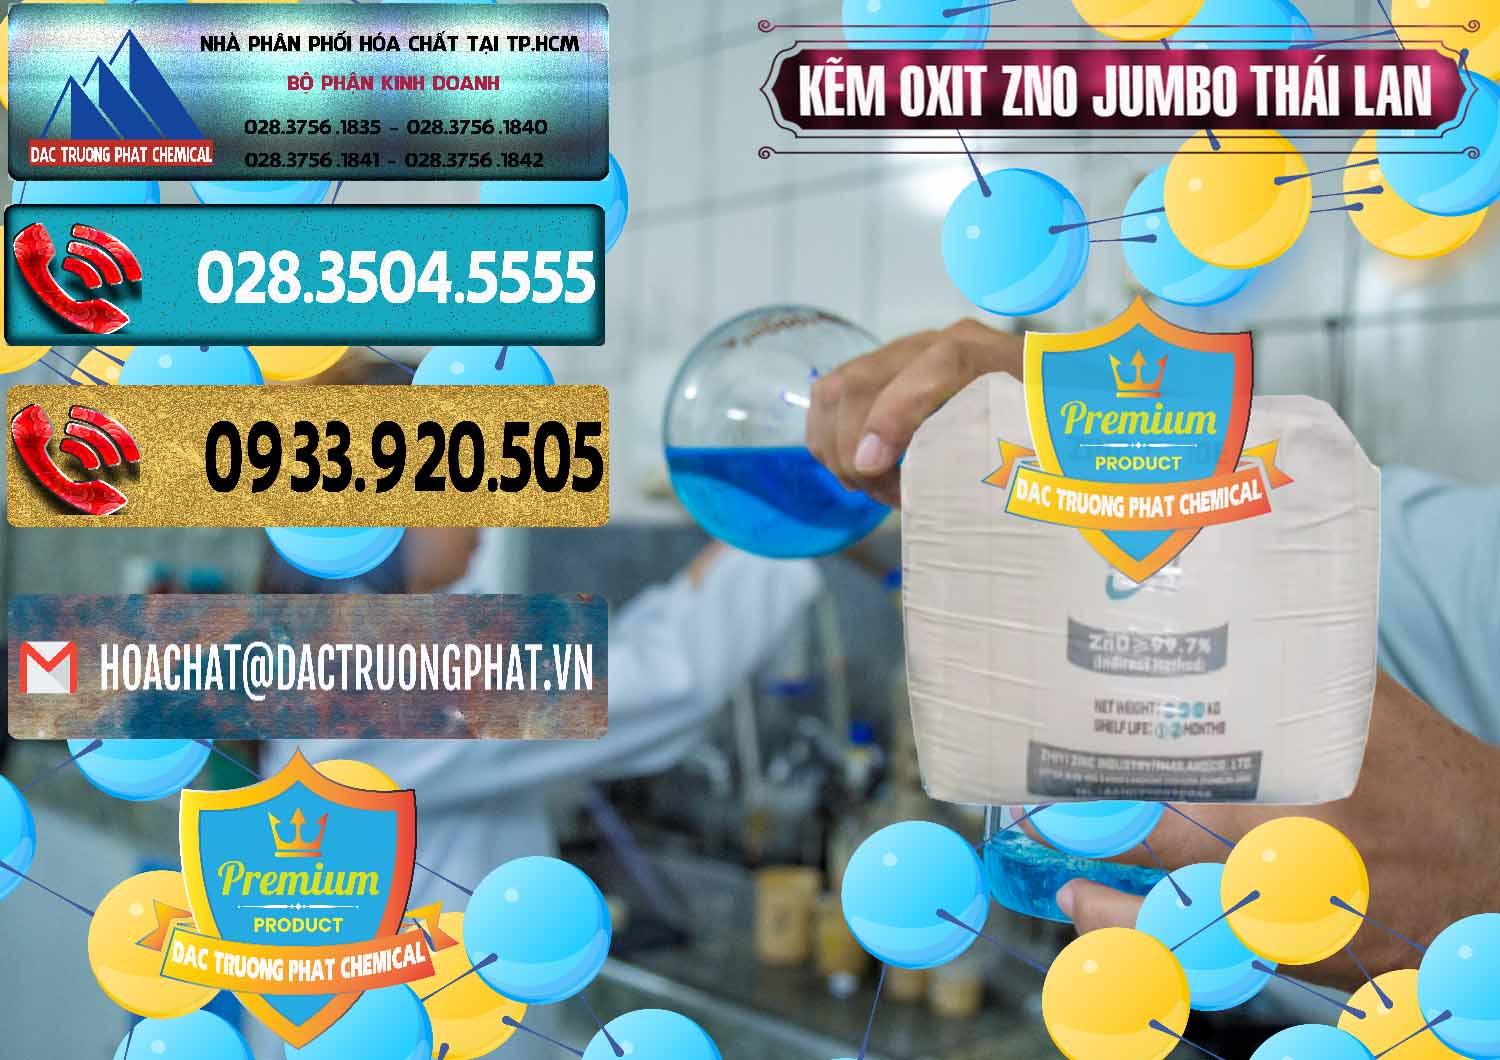 Nơi bán _ cung cấp Zinc Oxide - Bột Kẽm Oxit ZNO Jumbo Bành Thái Lan Thailand - 0370 - Nơi chuyên phân phối & nhập khẩu hóa chất tại TP.HCM - hoachatdetnhuom.com